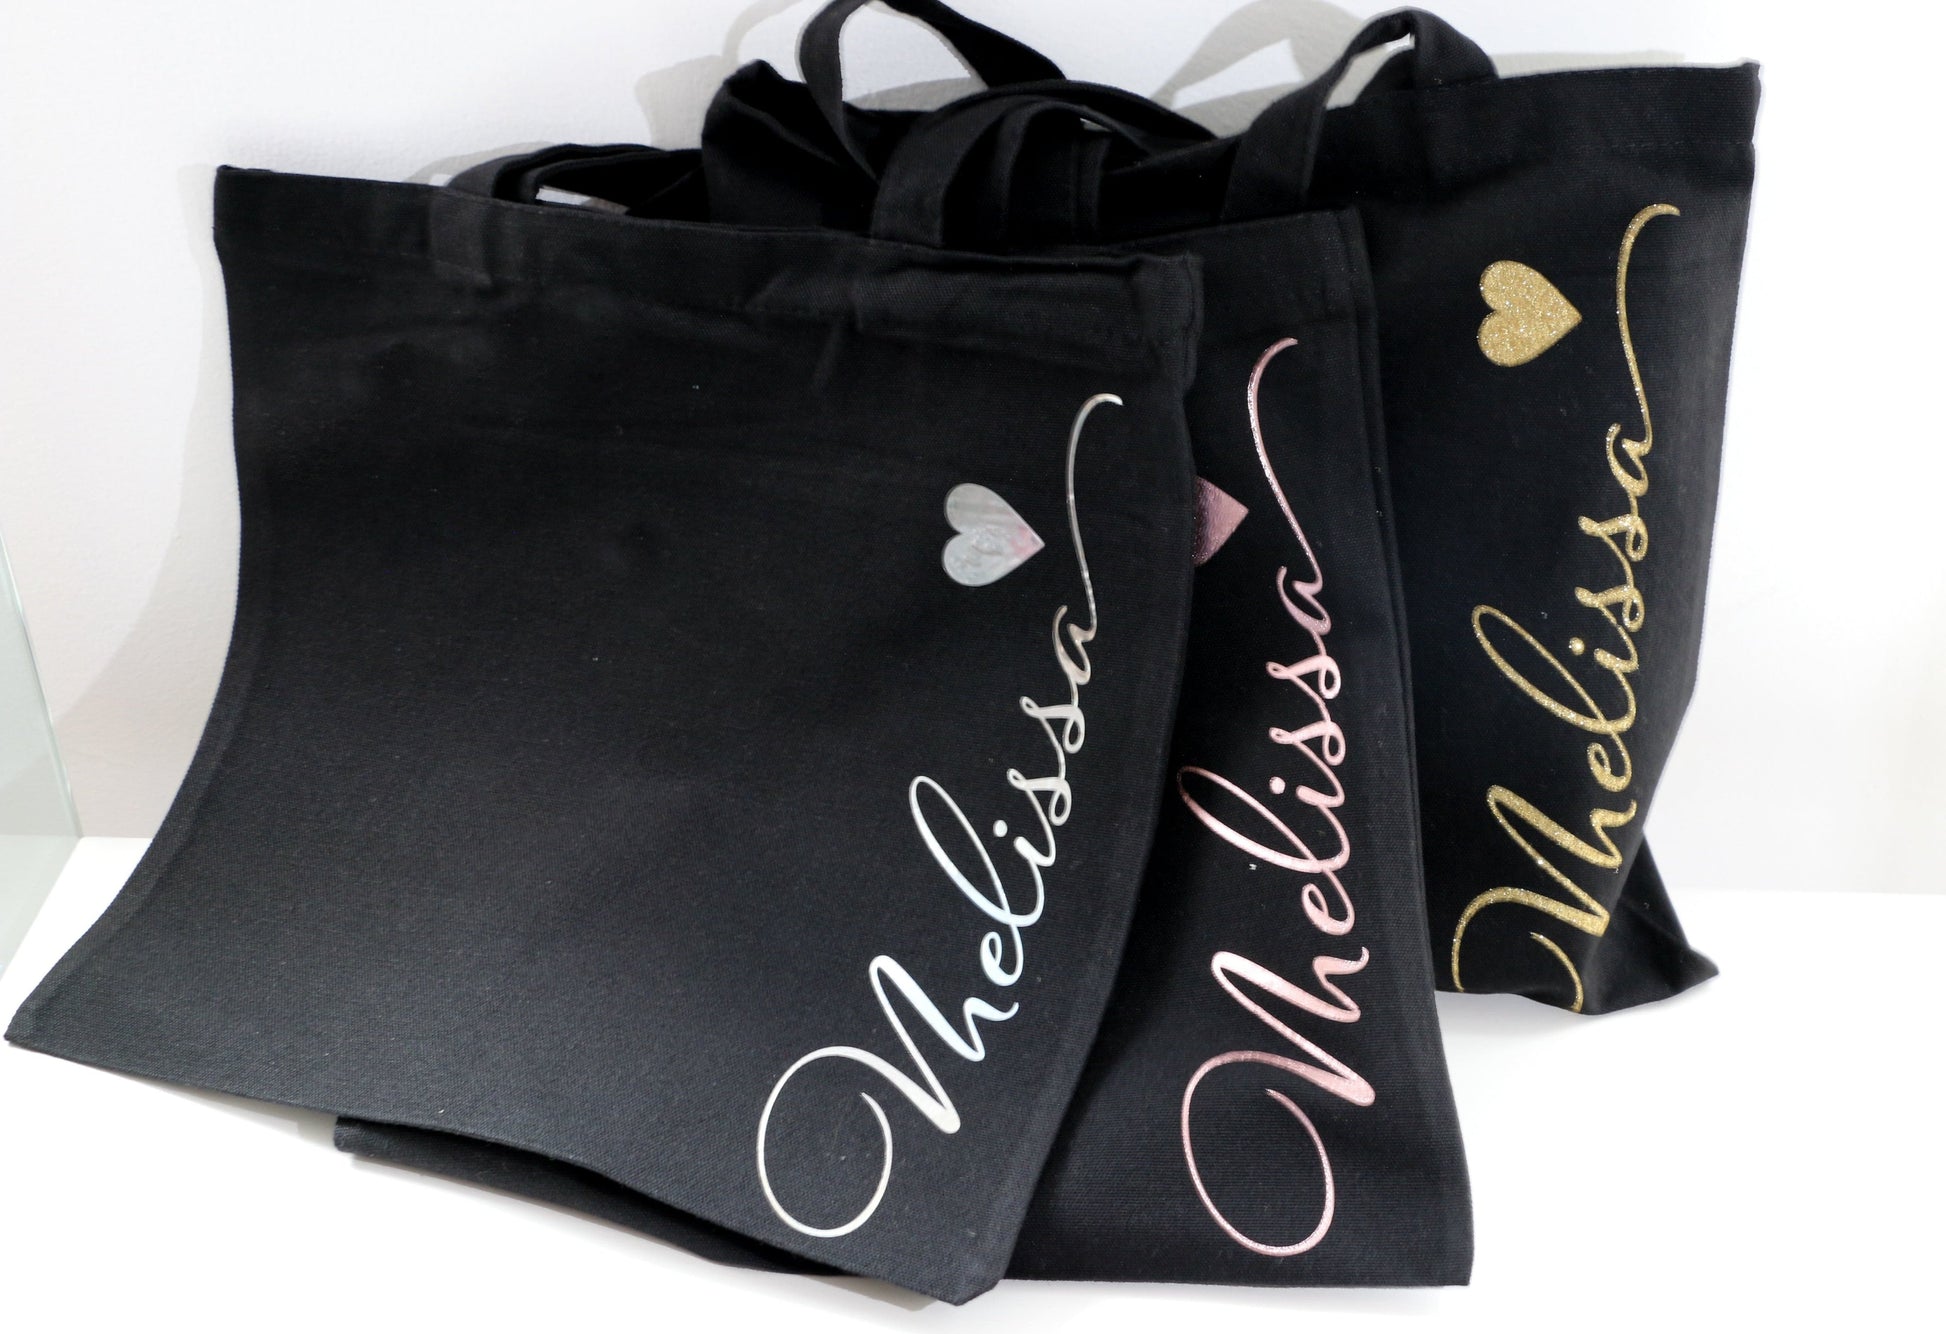 Personalised tote bag - Smooches Bridal